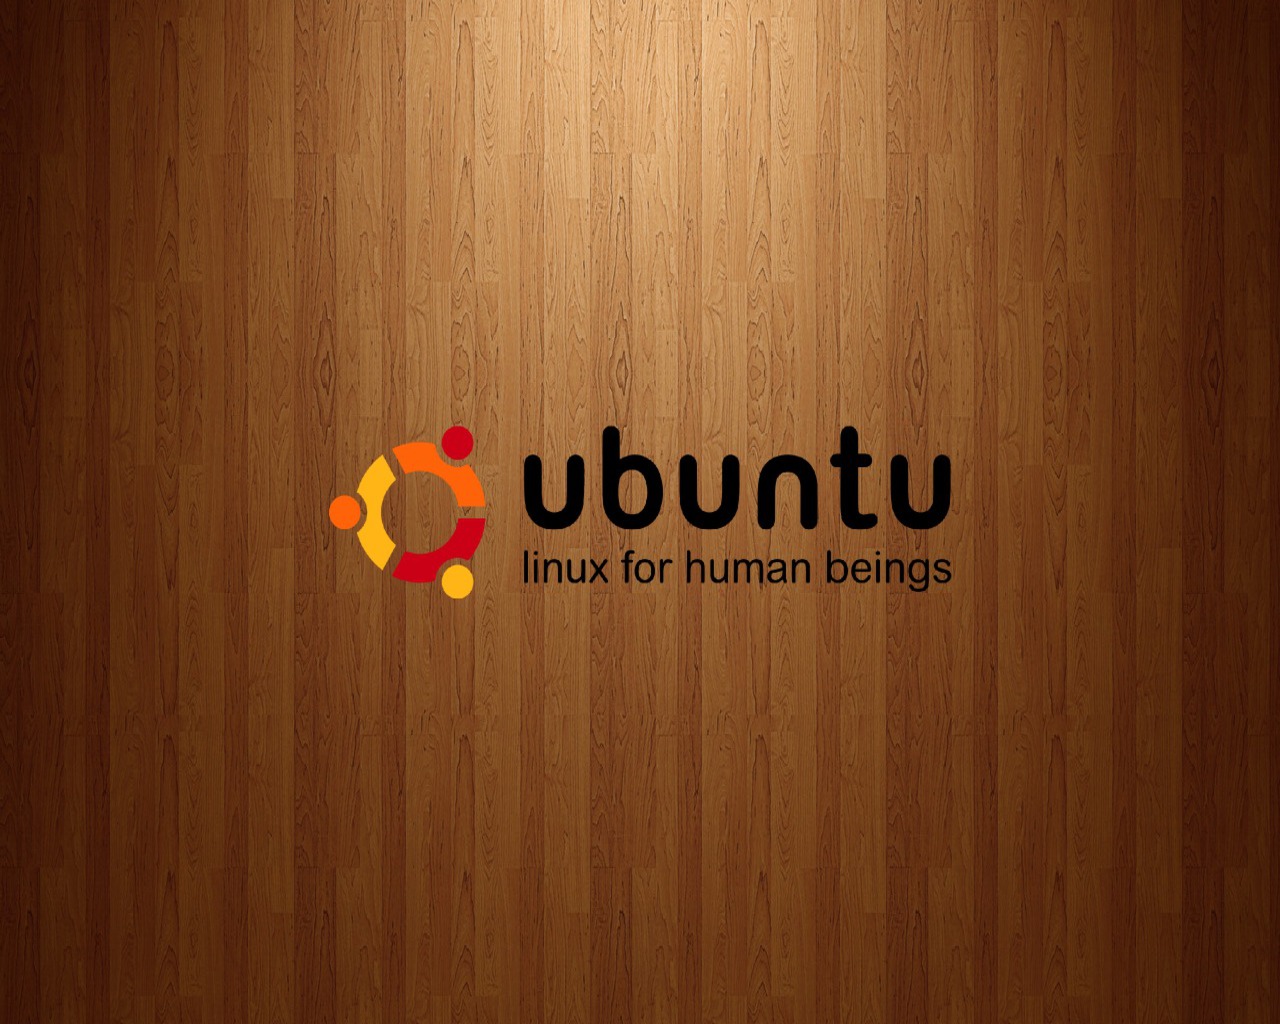 ubuntu wallpapers hd ubuntu wallpapers hd ubuntu wallpapers hd ubuntu 1280x1024